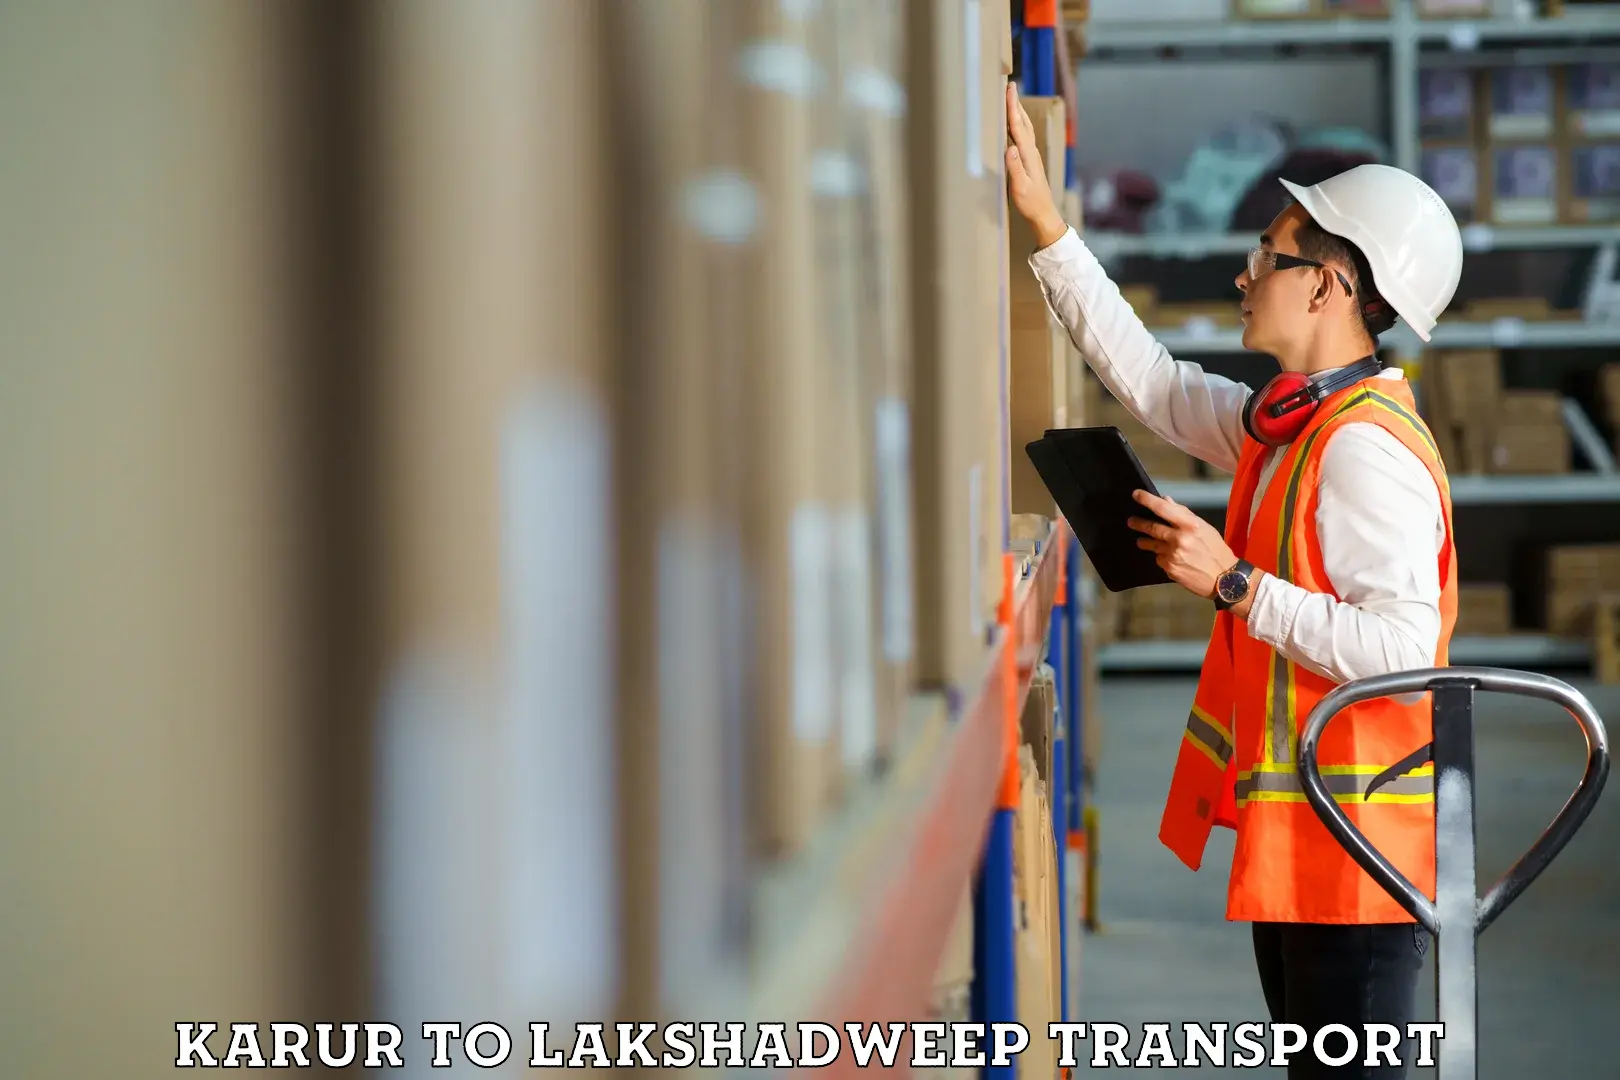 Daily transport service Karur to Lakshadweep